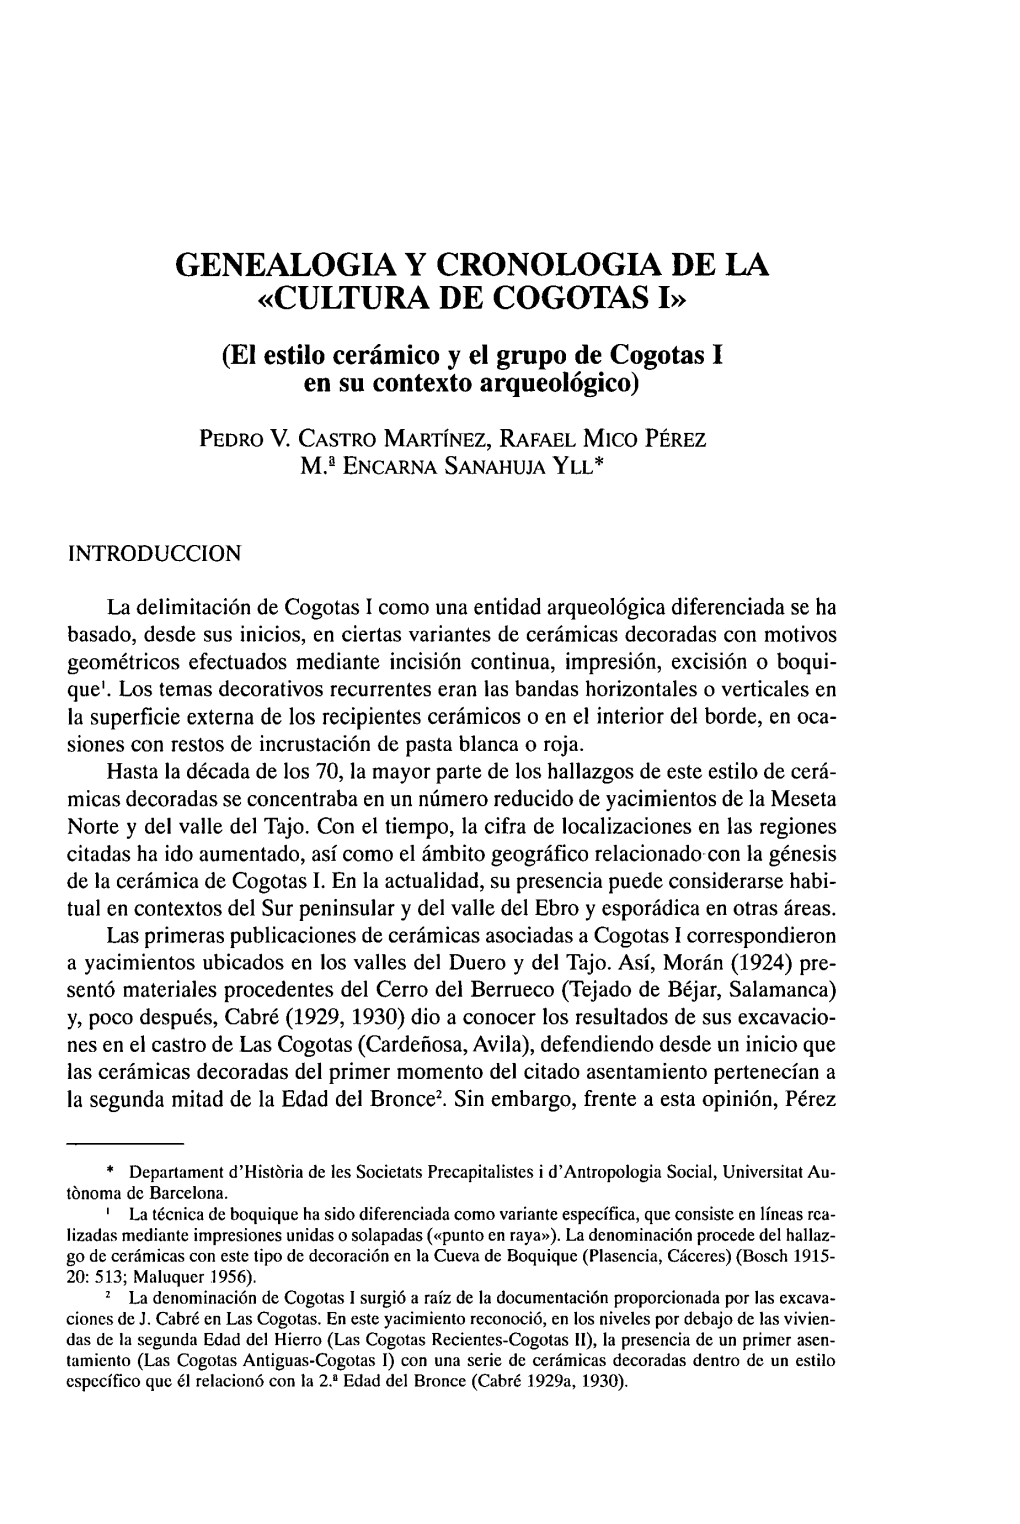 CULTURA DE COGOTAS I» (El Estilo Cerámico Y El Grupo De Cogotas I En Su Contexto Arqueológico)